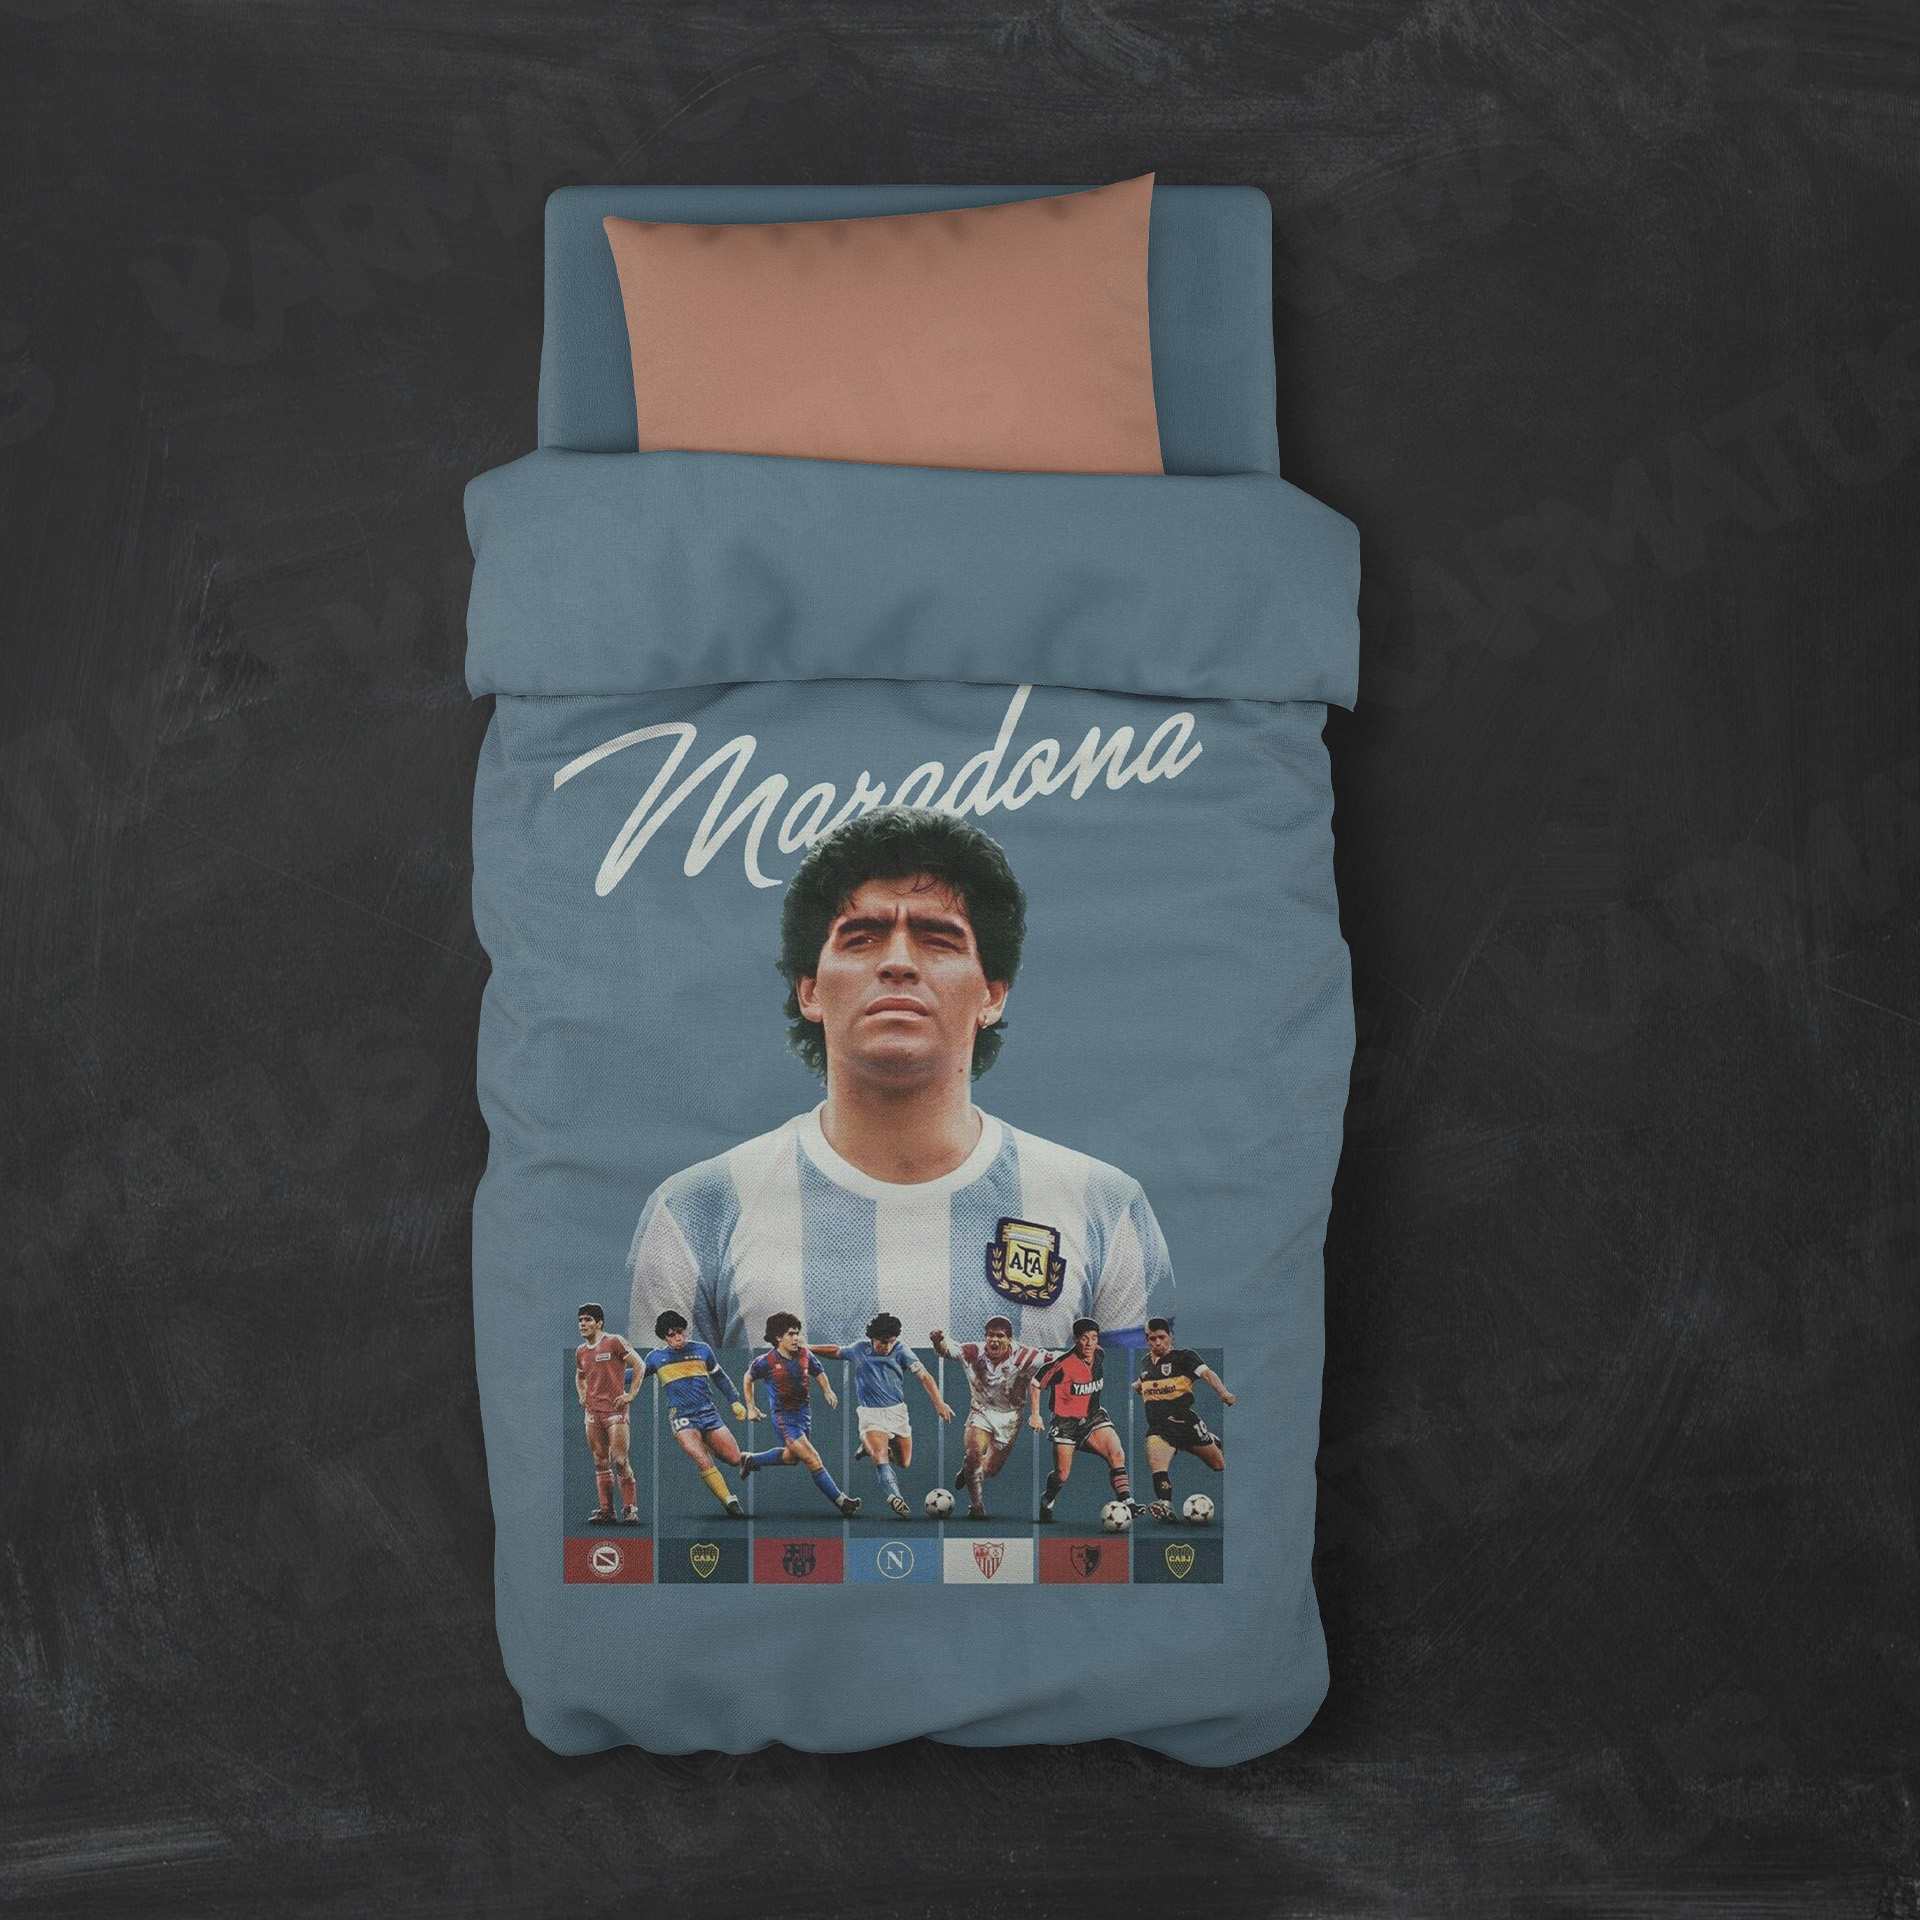 روتختی طرح دیگو مارادونا Diego Maradona